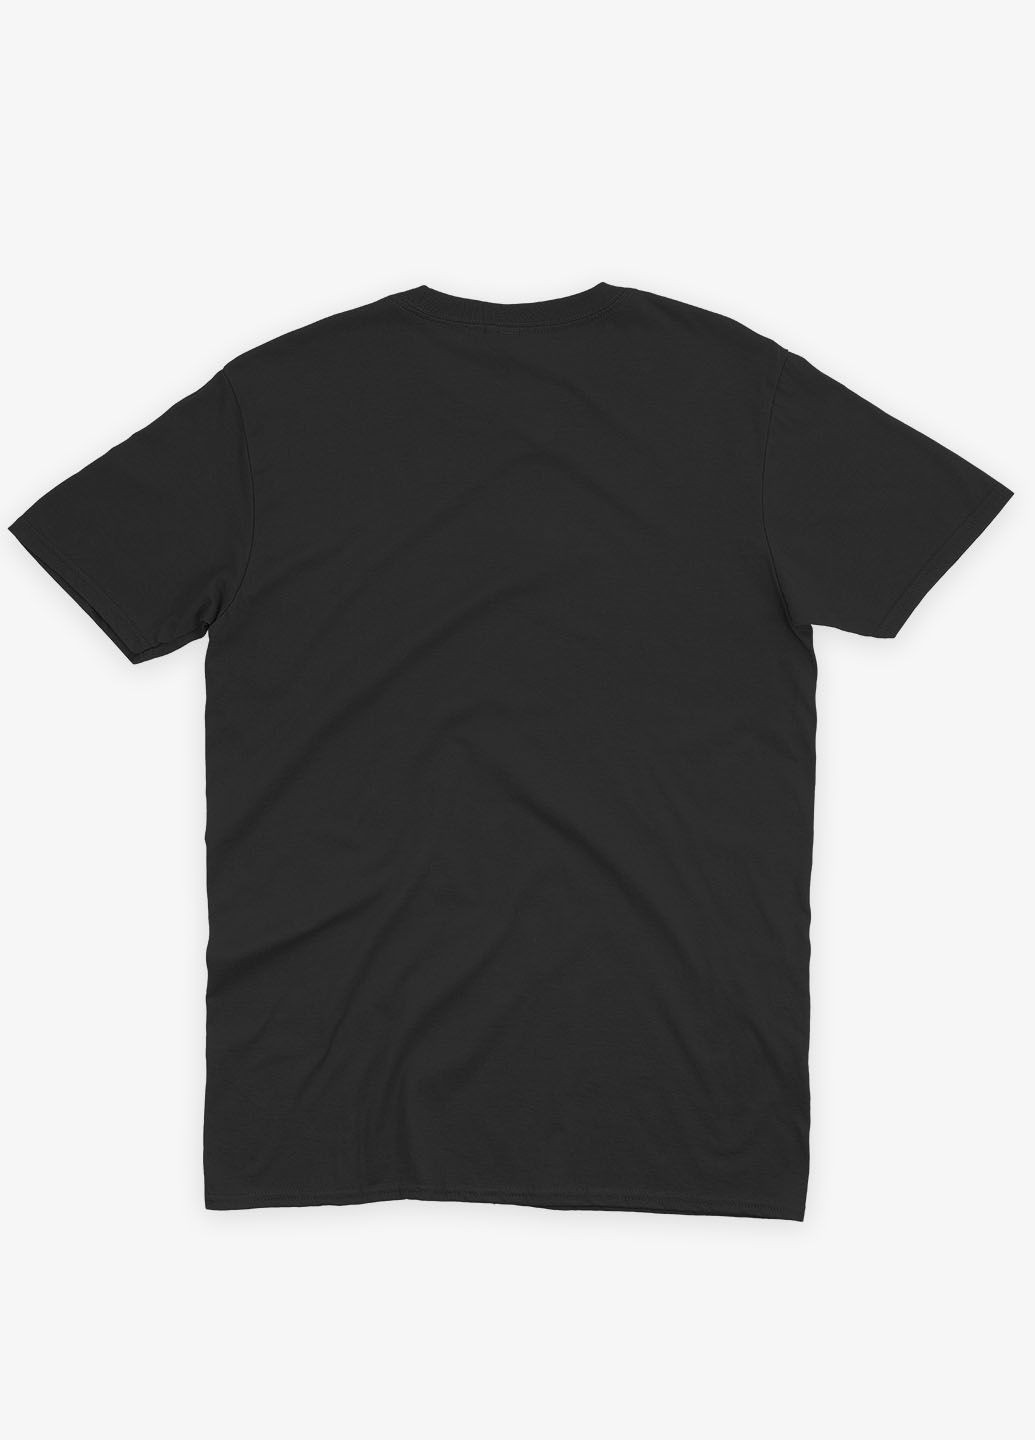 Черная мужская футболка с рок-принтом "ac/dc" (ts001-1-bl-004-2-092) Modno